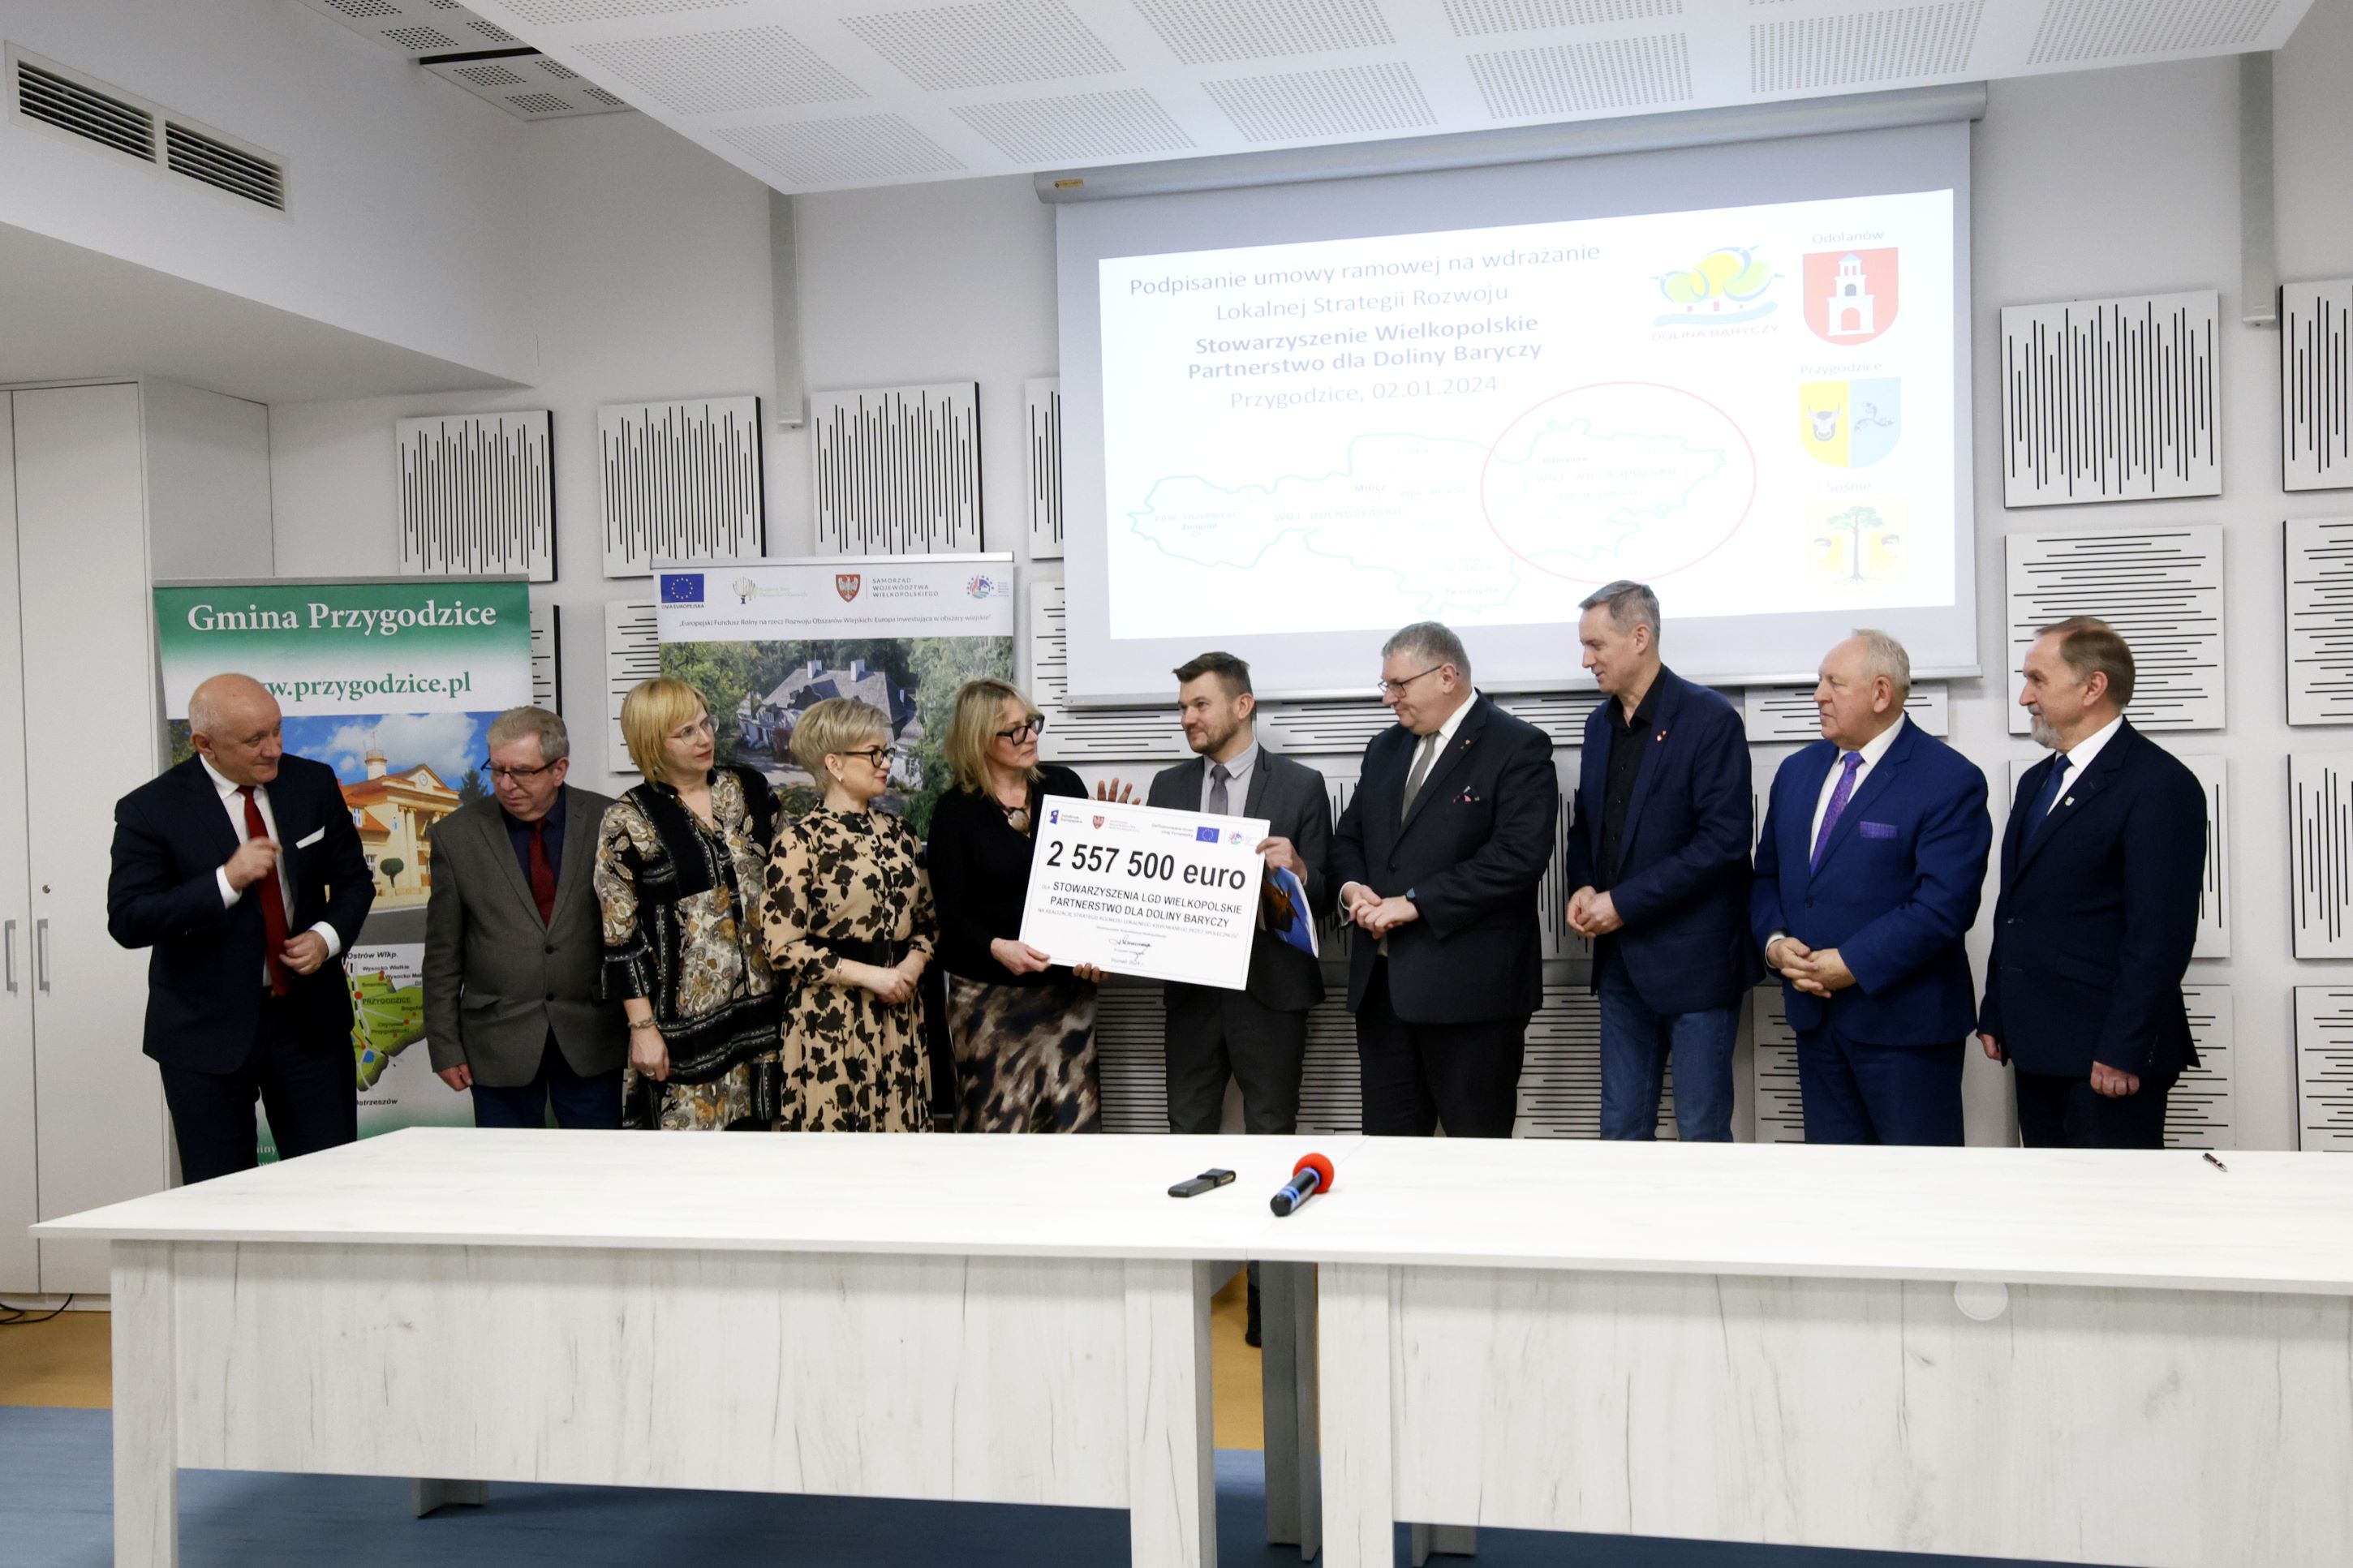 W przygodzicach podpisano umowę o dofinansowaniu na kwotę 2,5 mln euro przeznaczone dla lokalnej grupy działania "Wielkopolskie Partnerstwo dla Doliny Baryczy